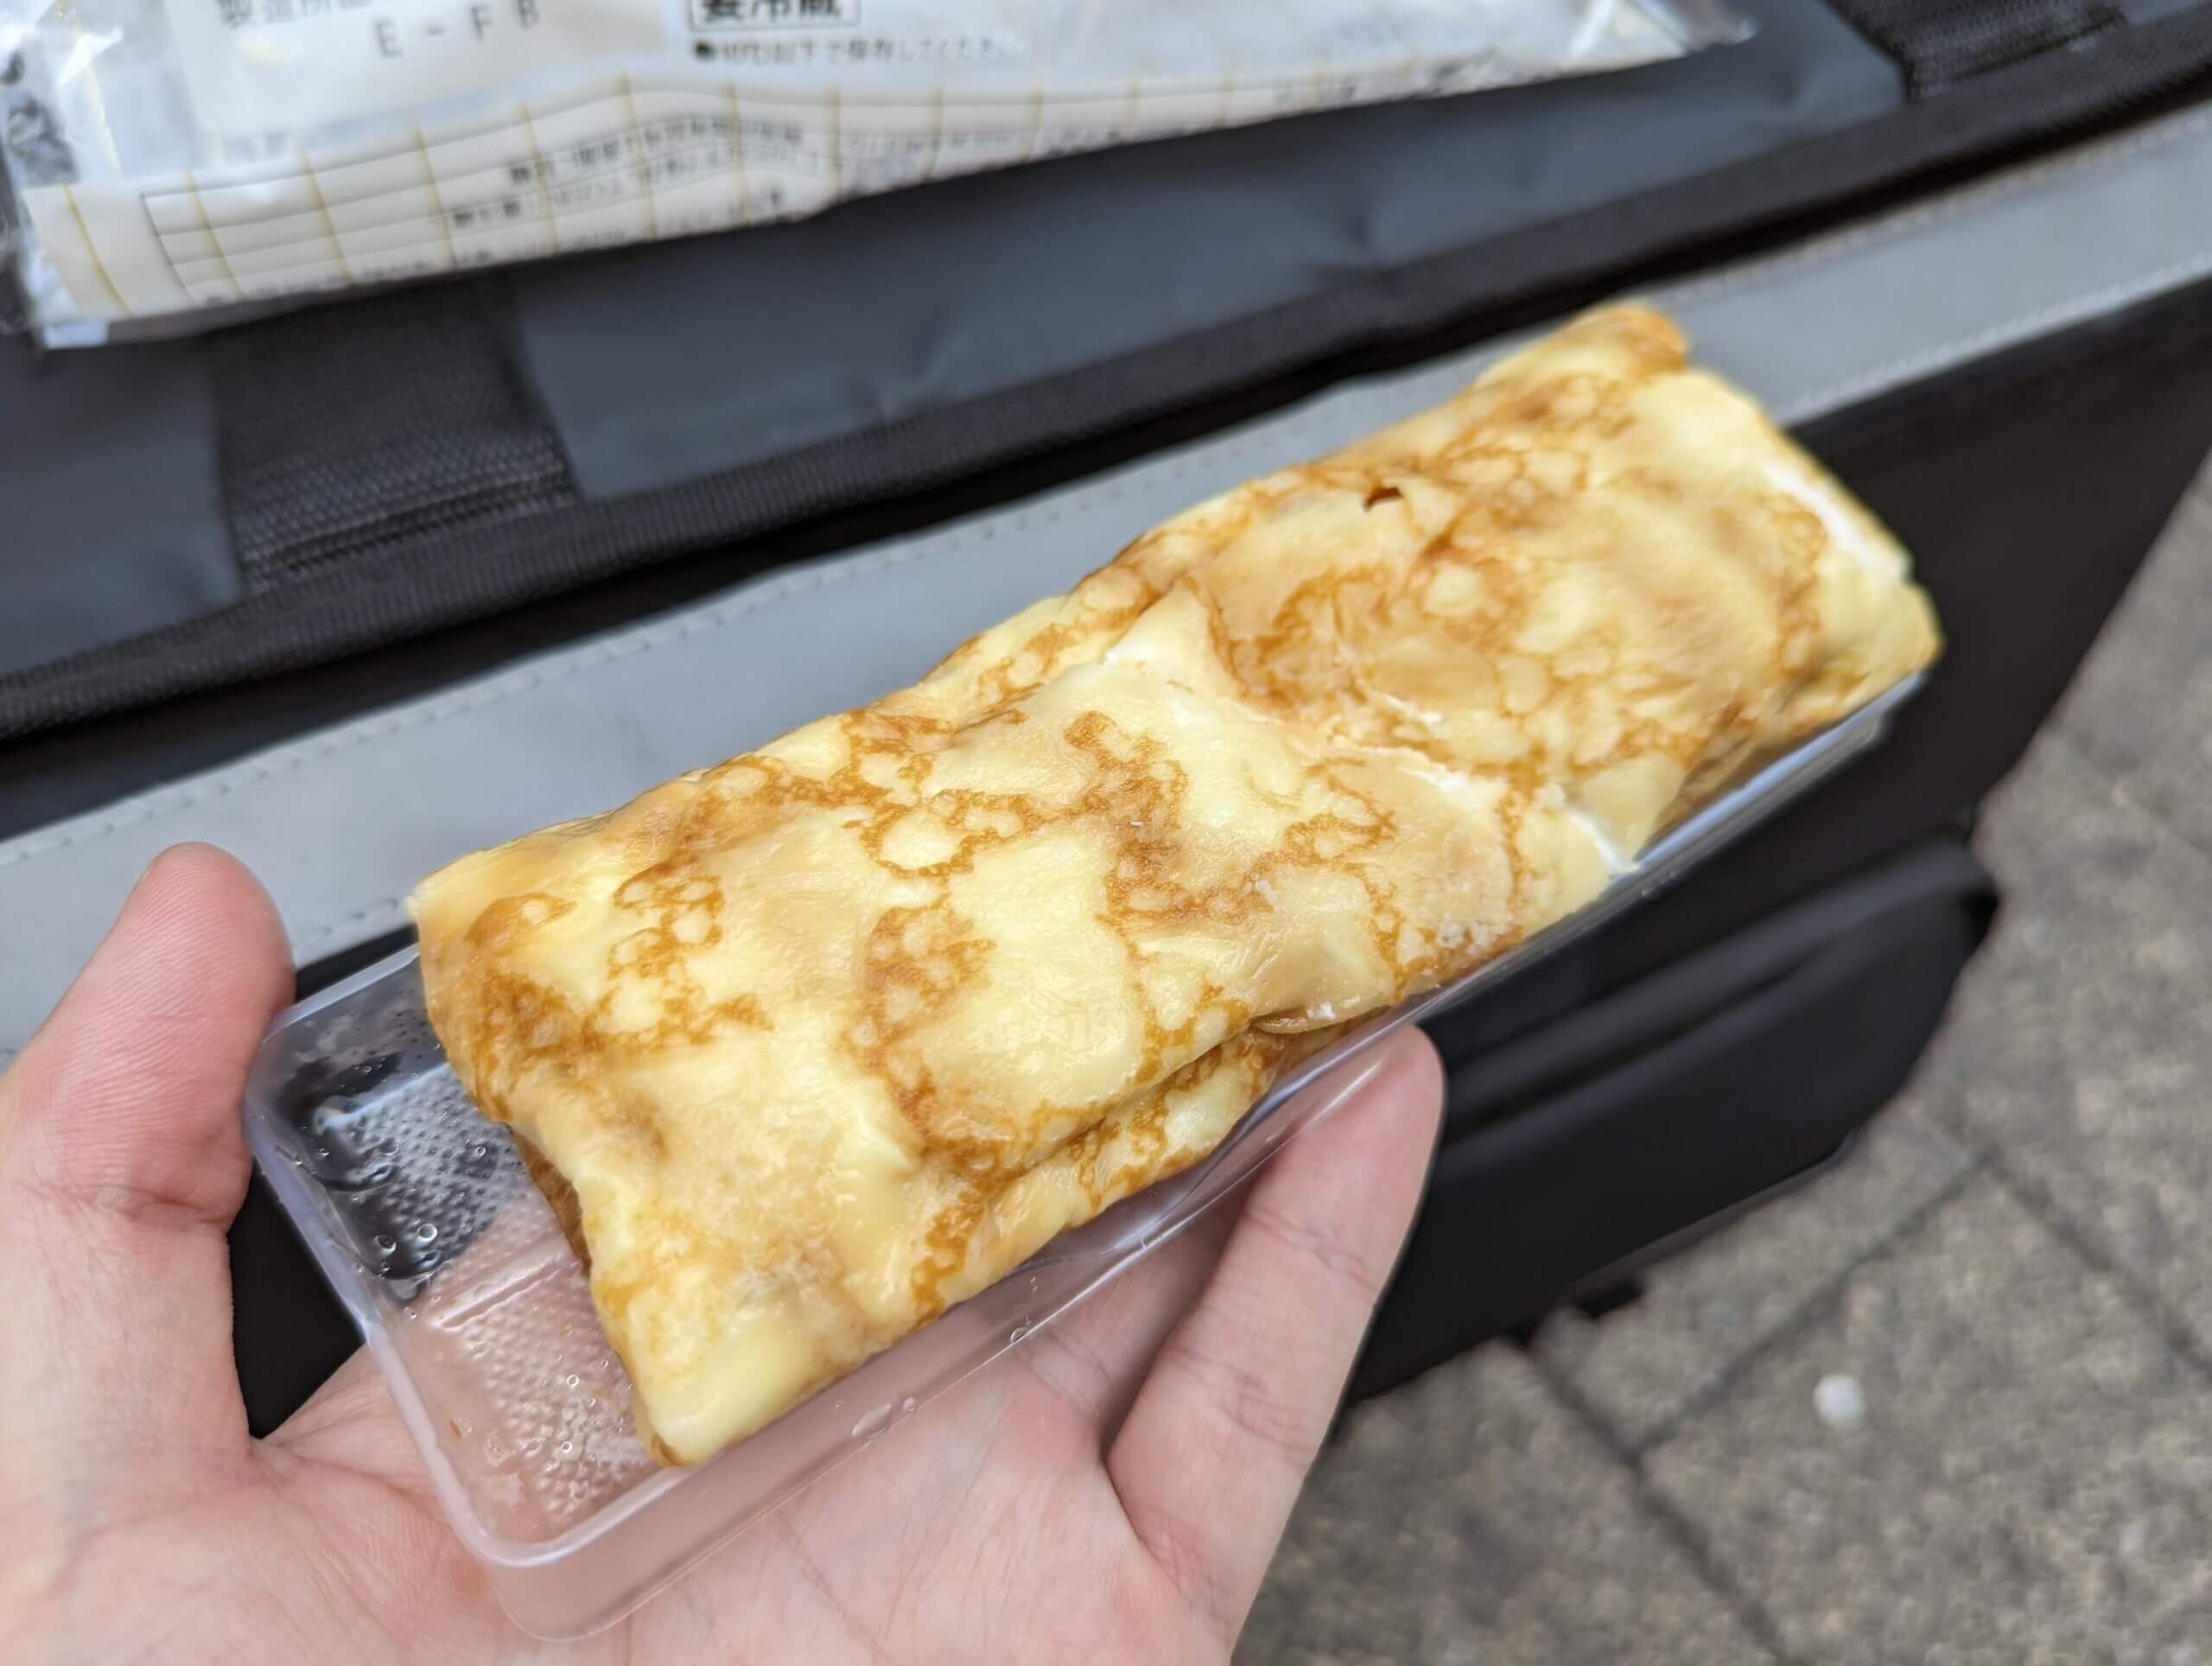 山崎製パン・バスク風チーズケーキ入りクレープ (4)